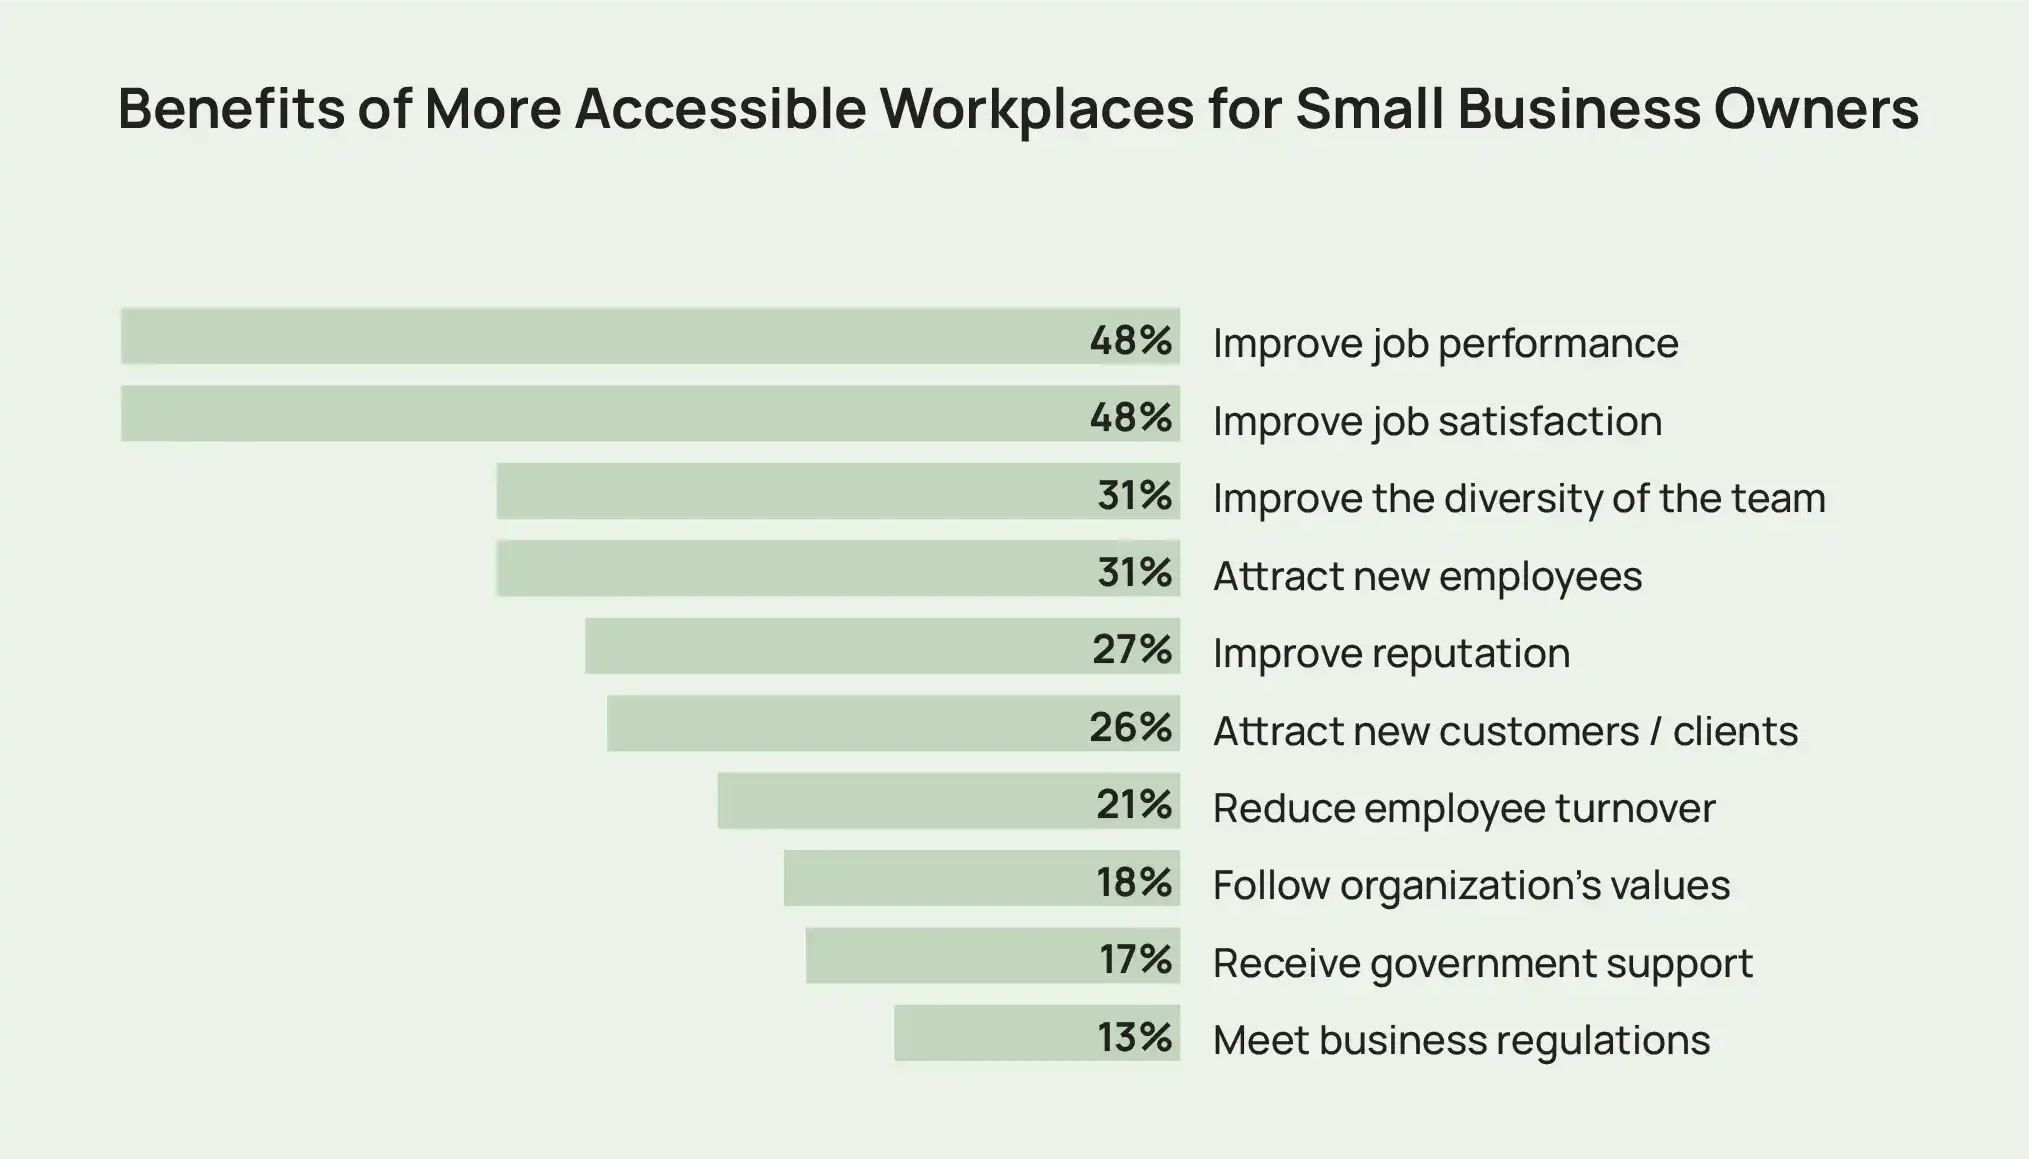 Un gráfico de barras que muestra ejemplos de beneficios de lugares de trabajo más accesibles para propietarios de pequeñas empresas, incluido un mejor desempeño y satisfacción laboral.